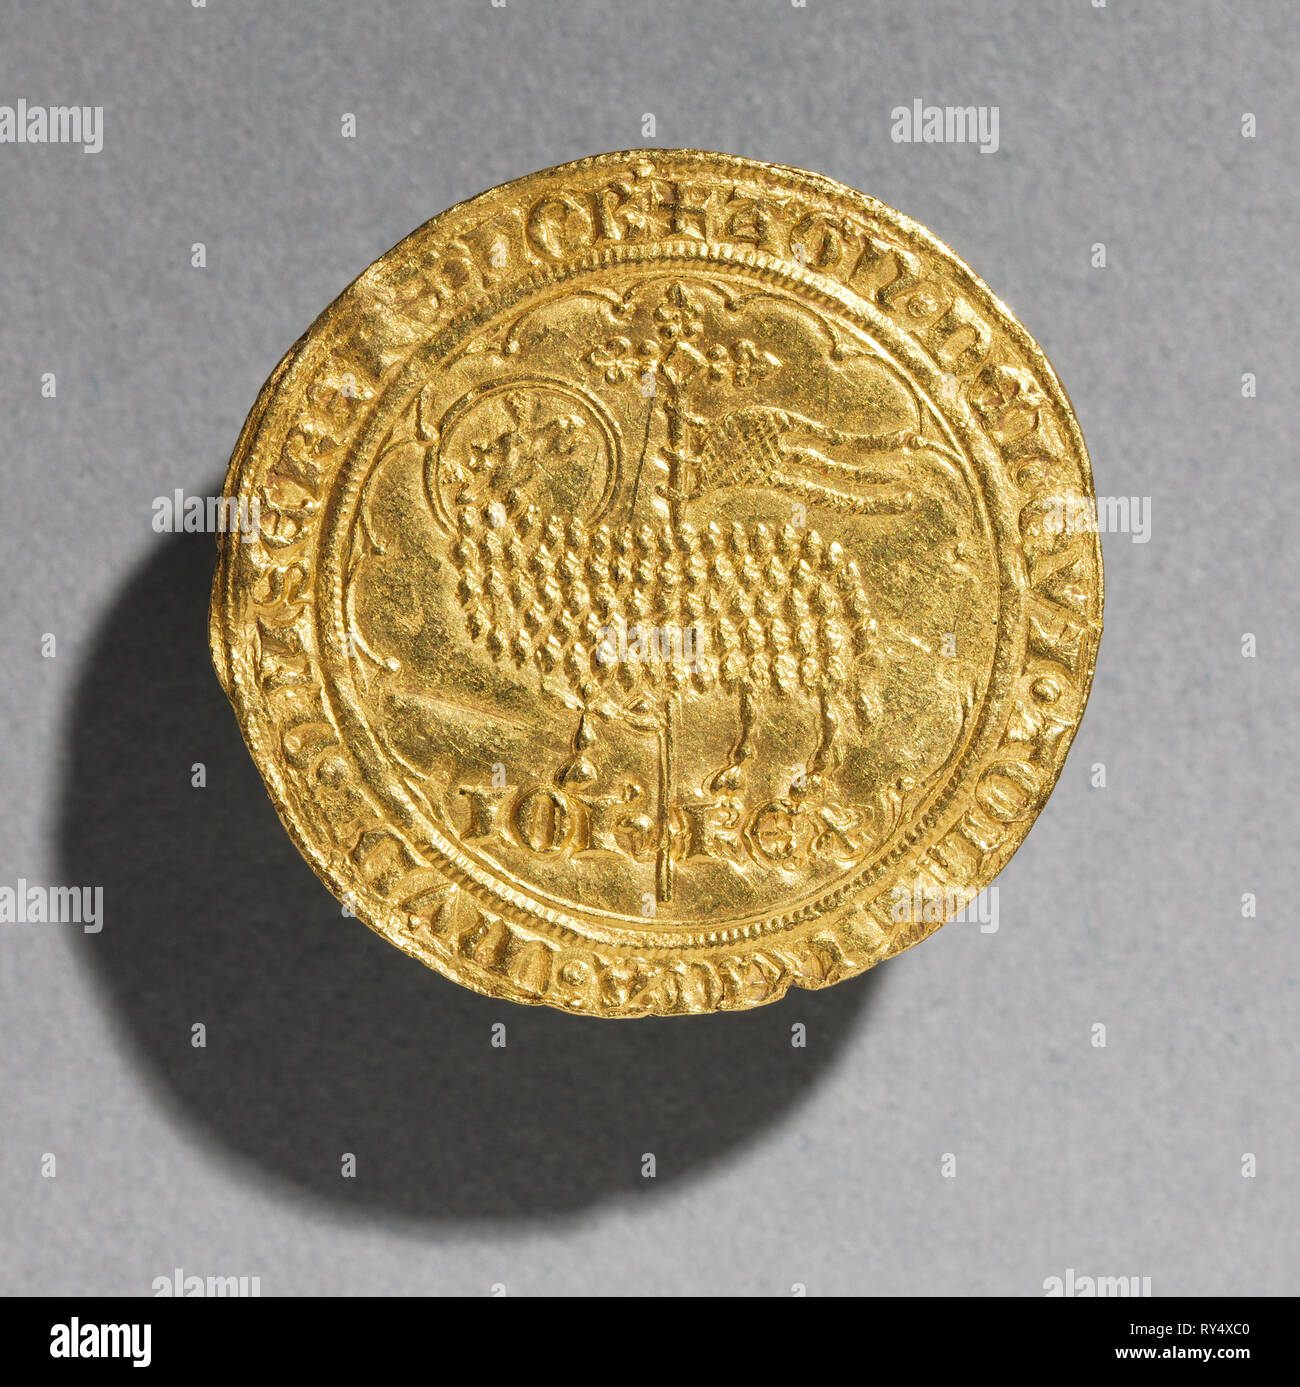 Mouton d'Or de Jean le Bon roi de France, 1350-1364 , 1350-1364. La France, de l'époque gothique, 14e siècle. Or, diamètre : 3.1 cm (1 1/4 in Banque D'Images